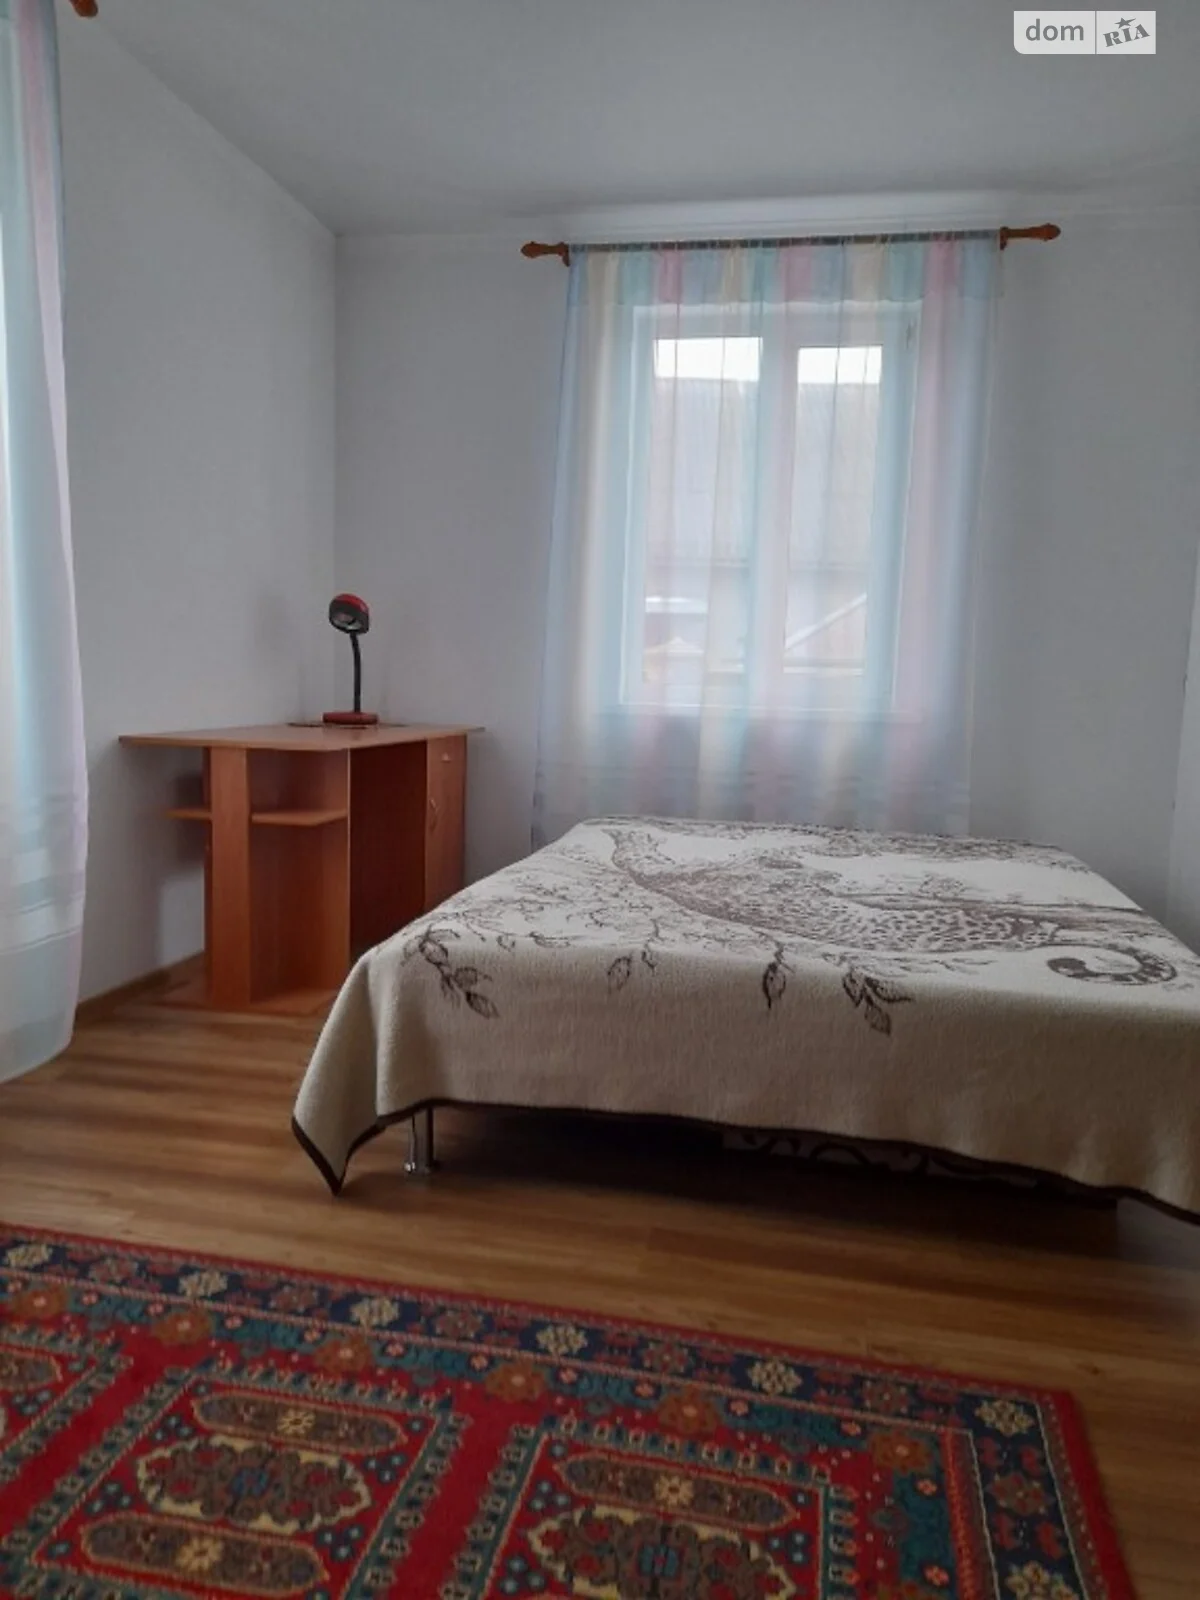 Здається в оренду 3-кімнатна квартира у Дубні, цена: 750 грн